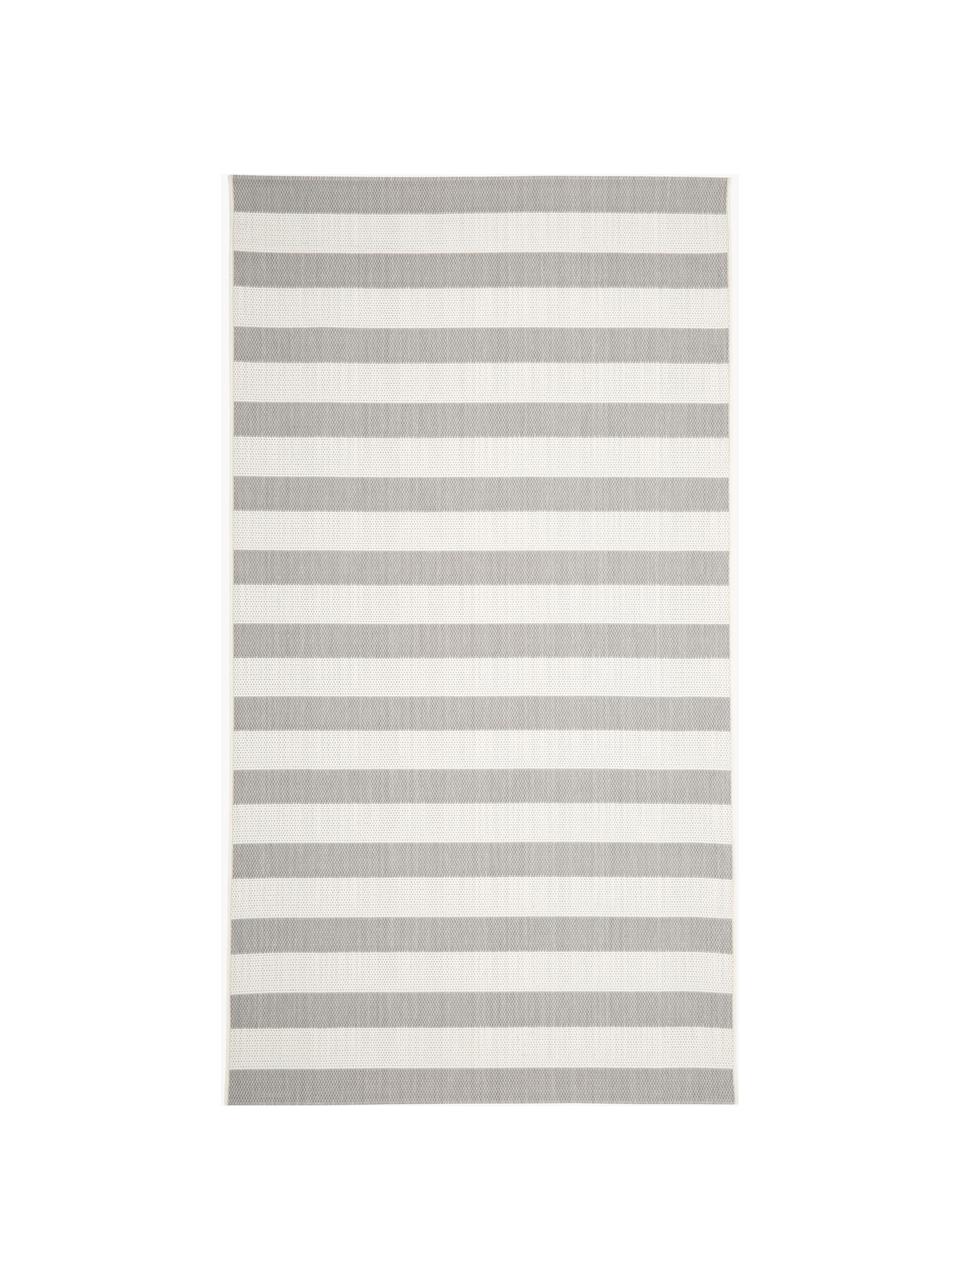 Pruhovaný interiérový/exteriérový koberec Axa, 86 % polypropylen, 14 % polyester, Tlumeně bílá, šedá, Š 80 cm, D 150 cm (velikost XS)